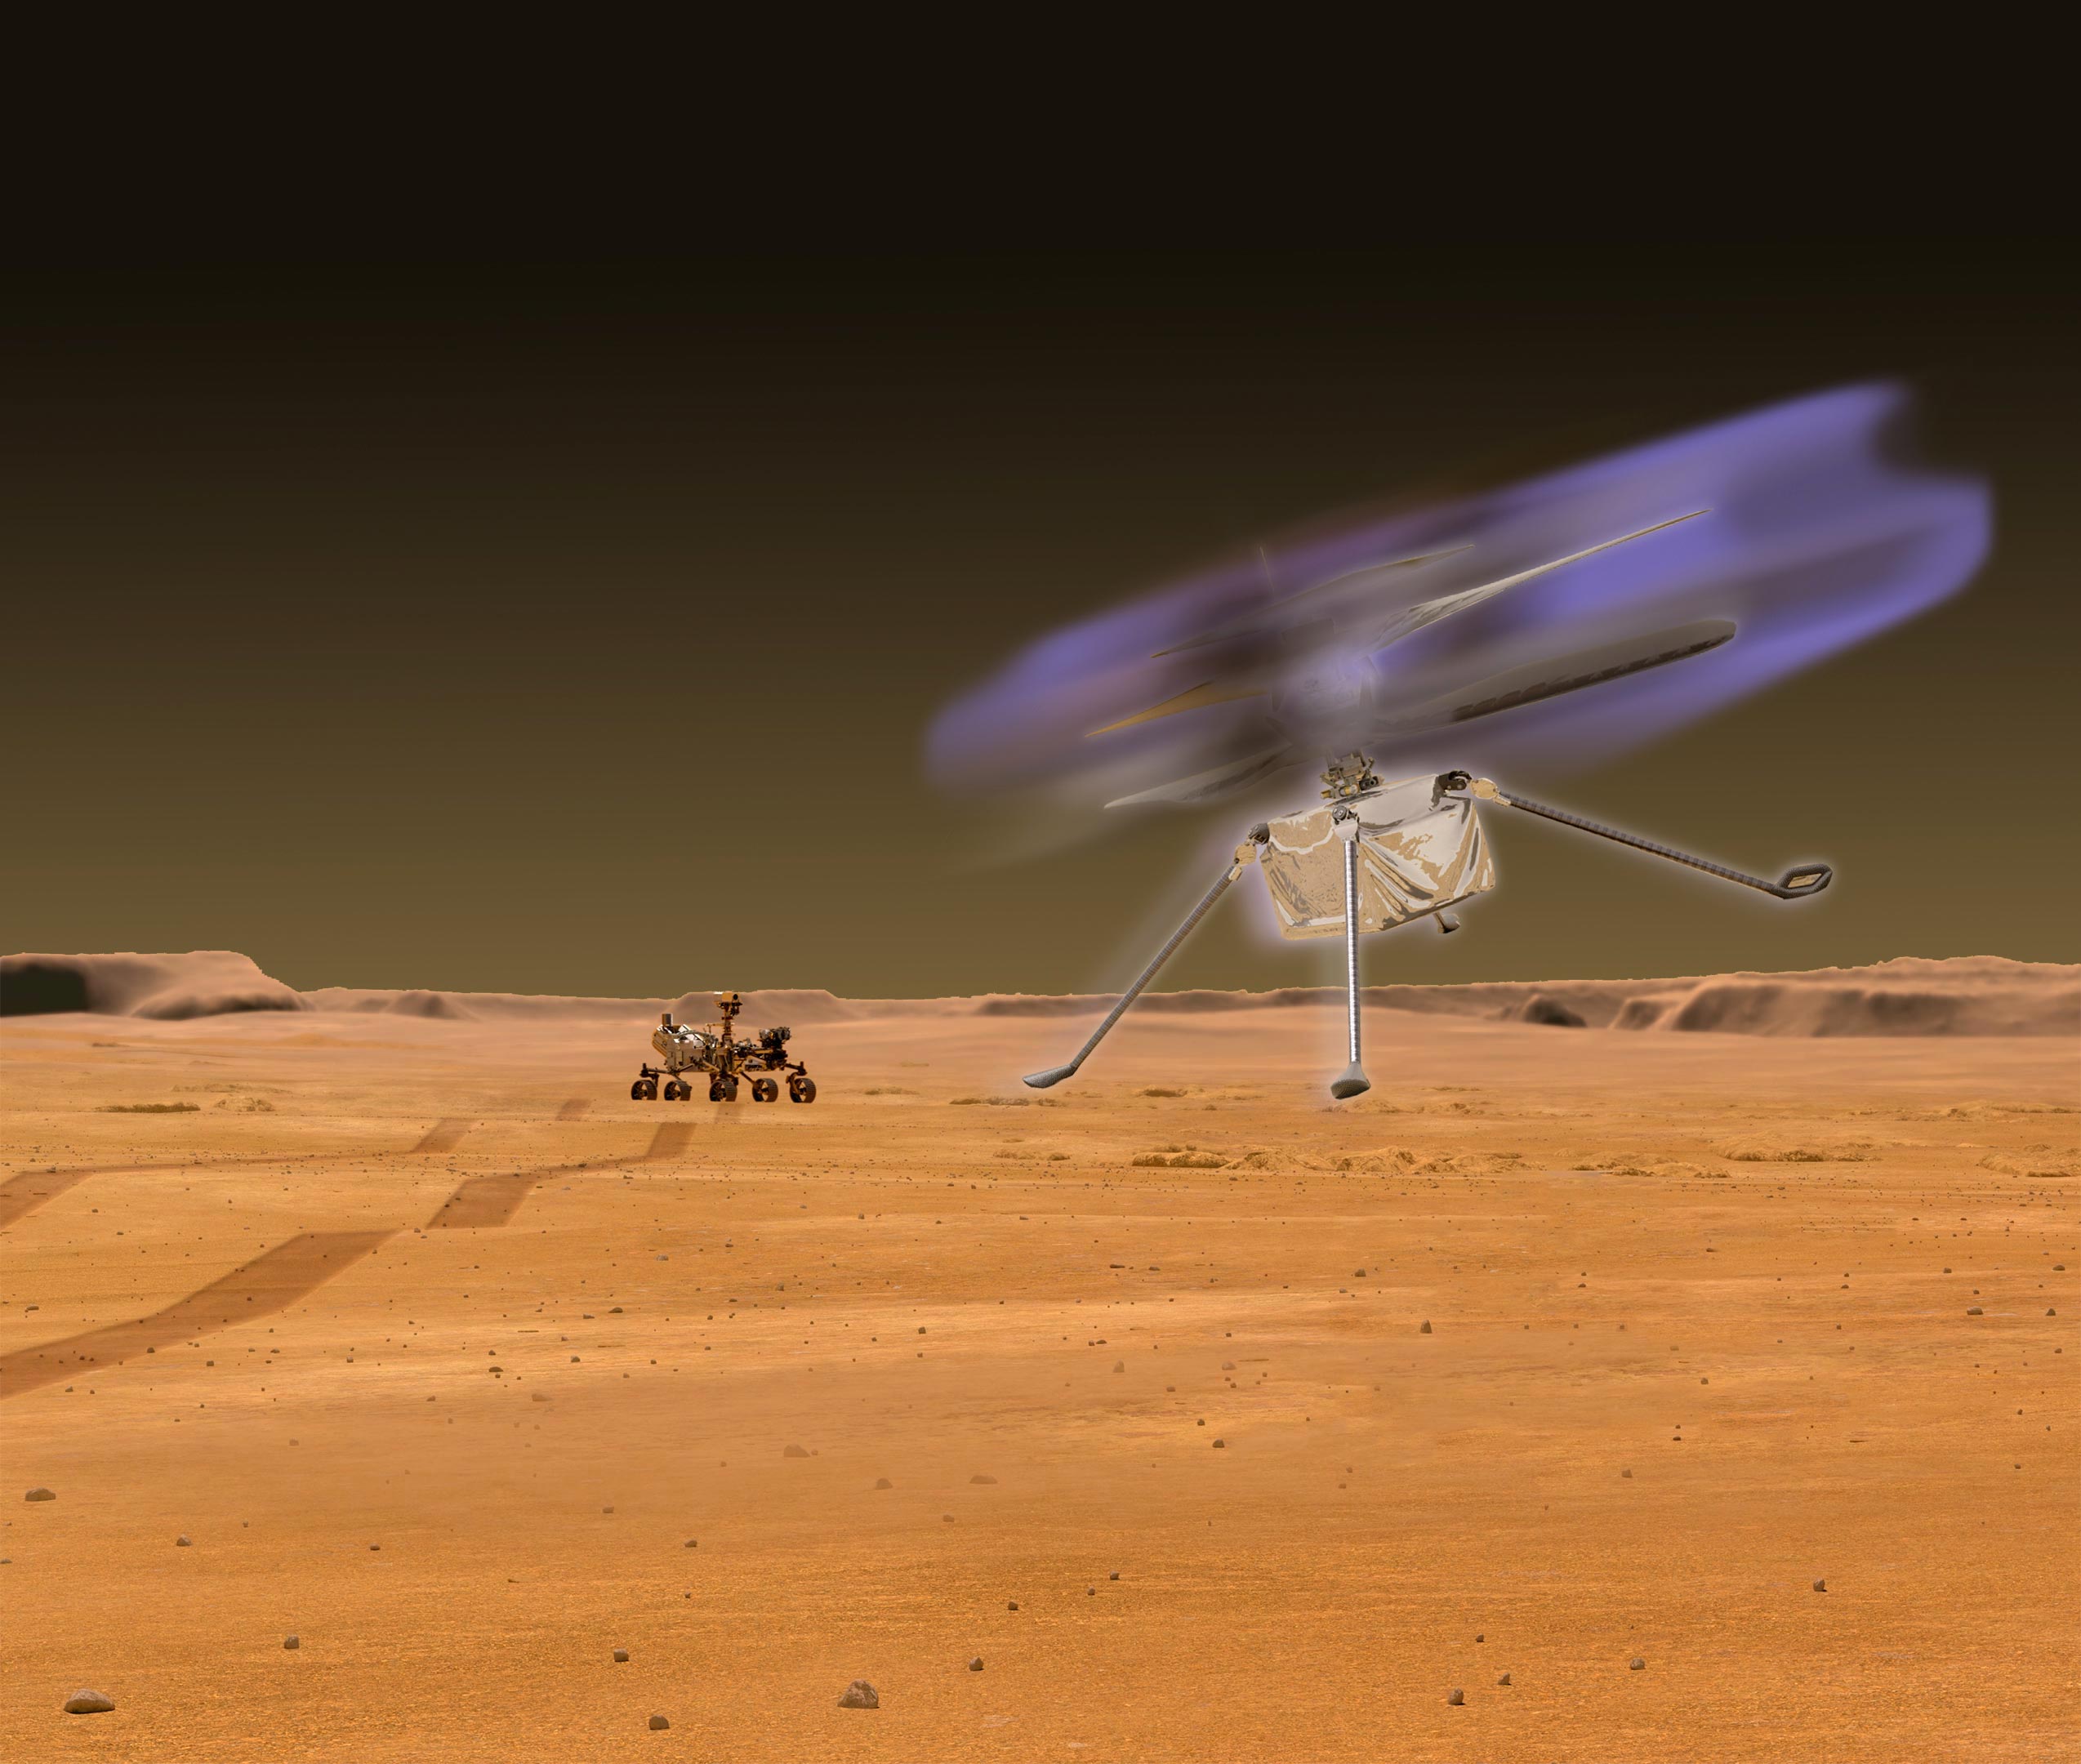 Martian Atmospheric Breakdown: Flying on Mars May Glow at Dusk